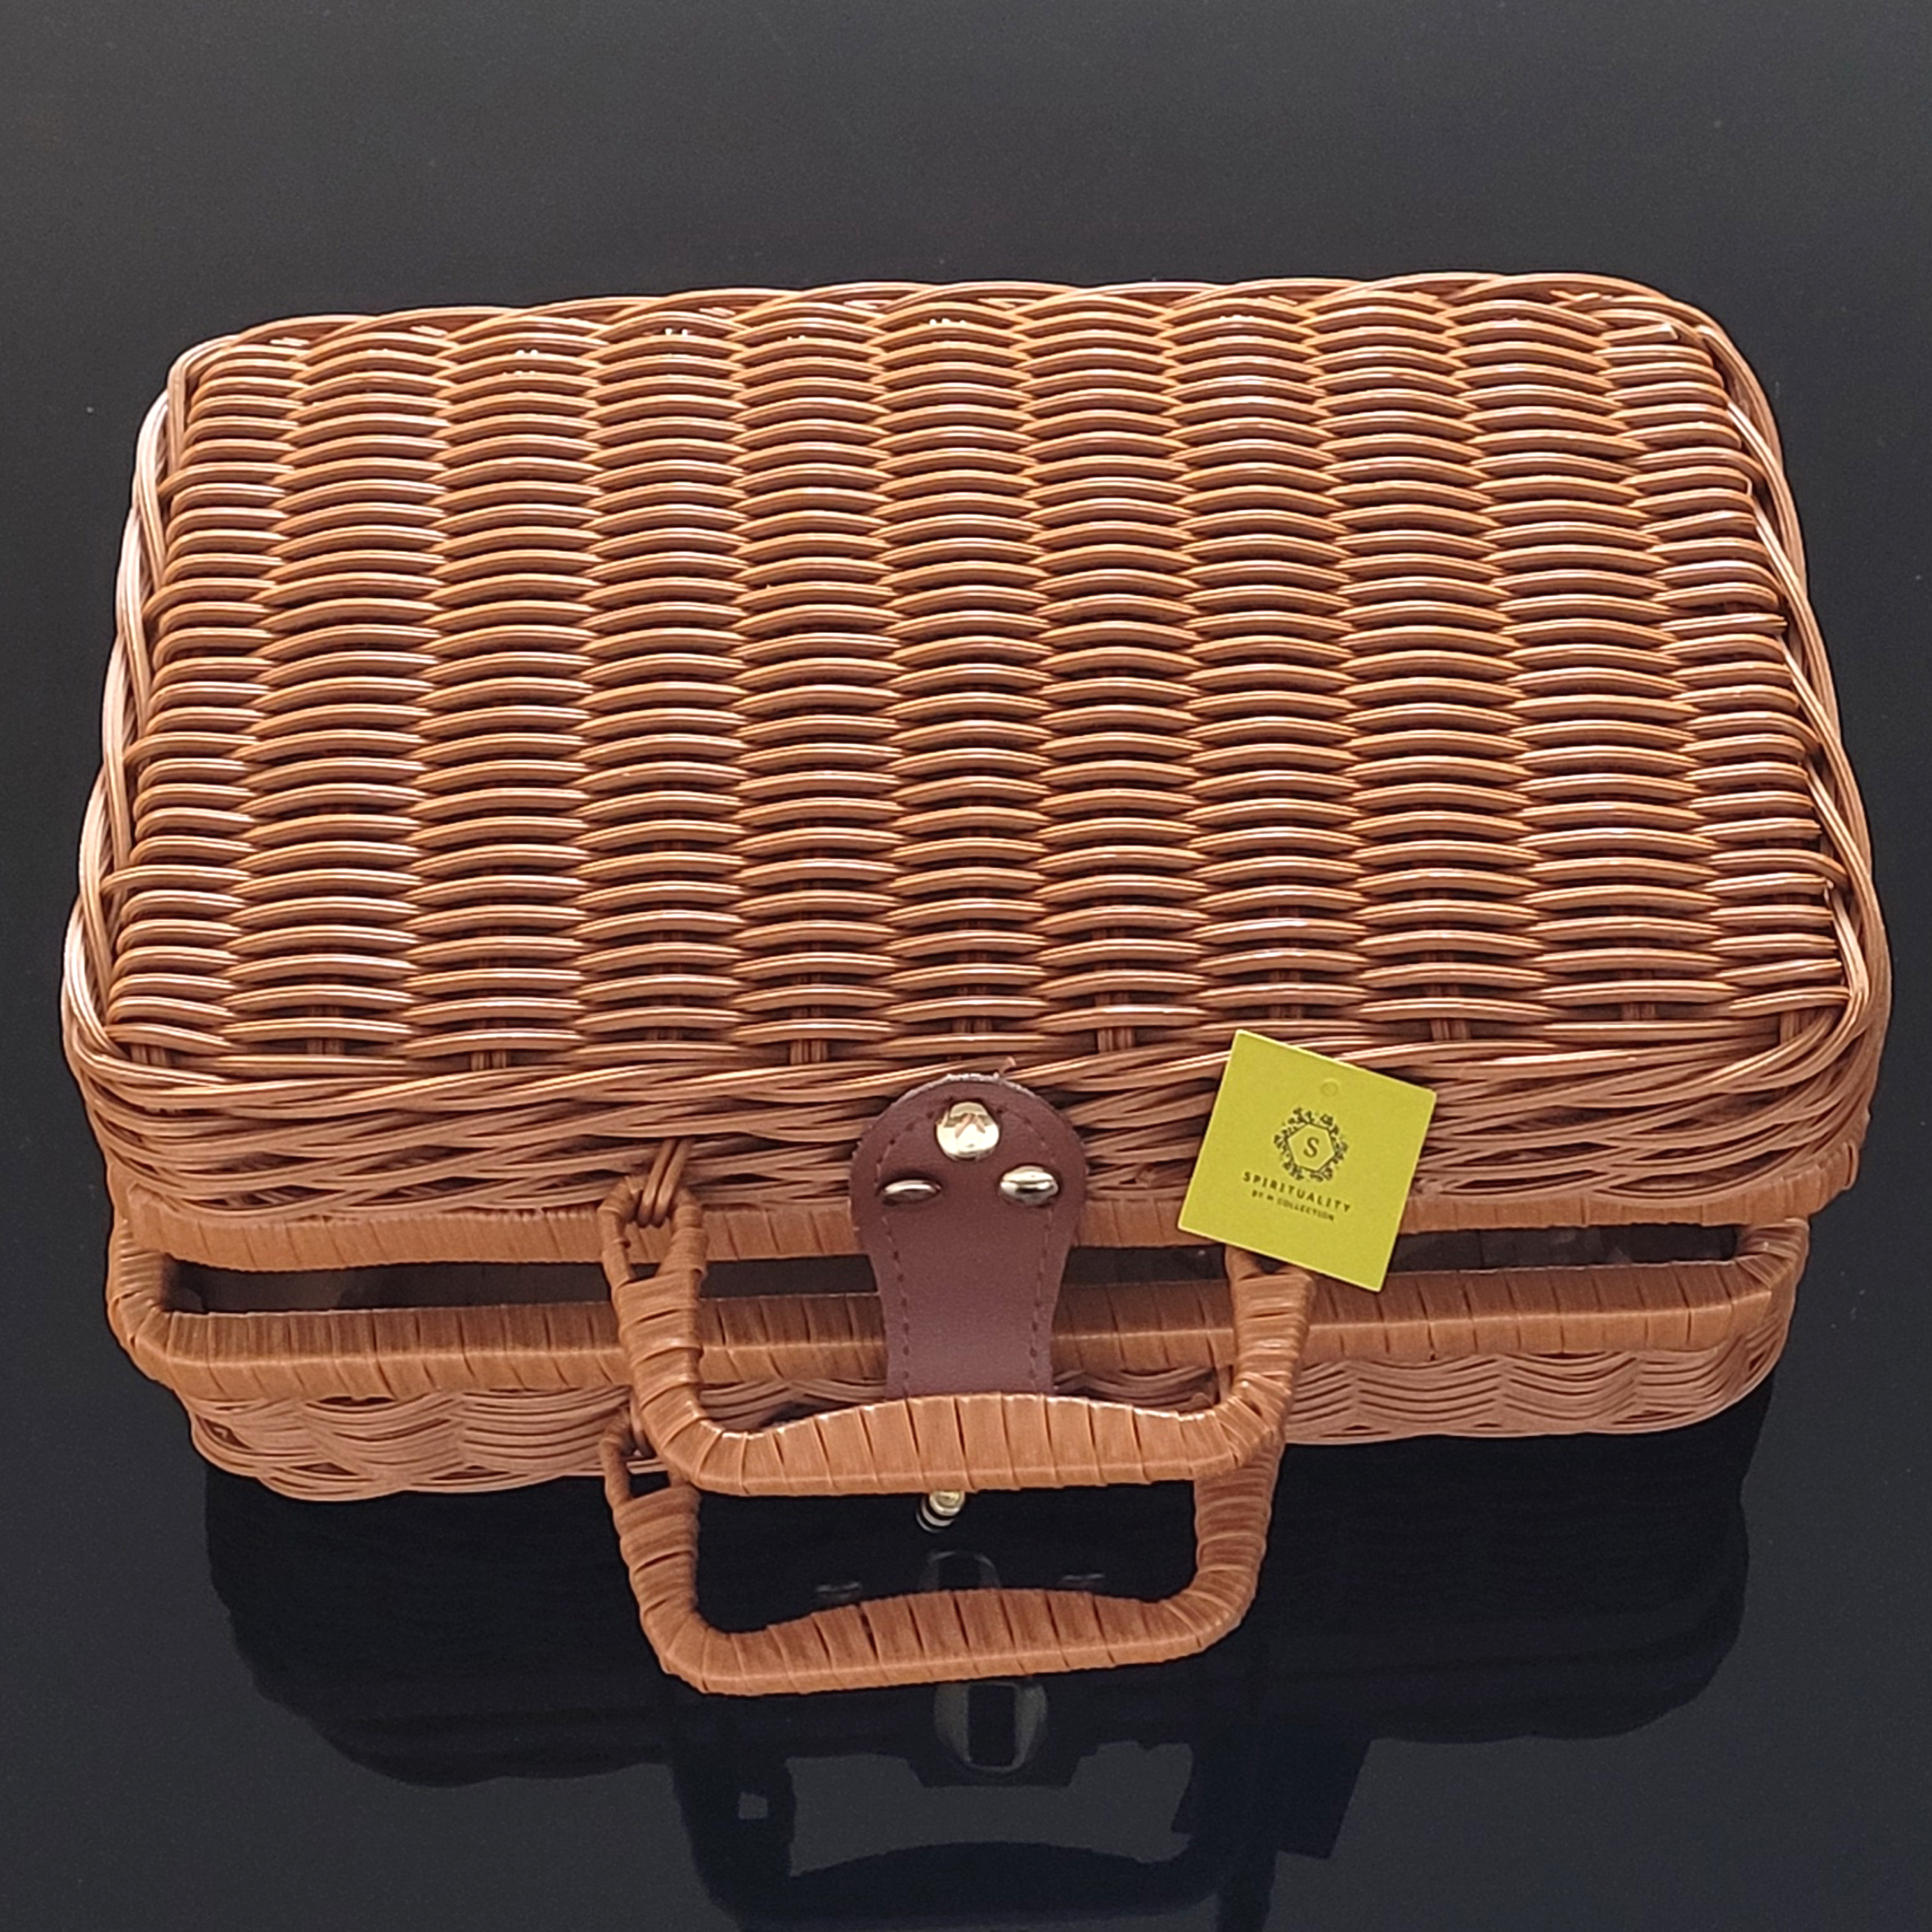 懷舊藤編手提箱 Vintage Rattan Case (26 x 17 x 11cm) Large Image